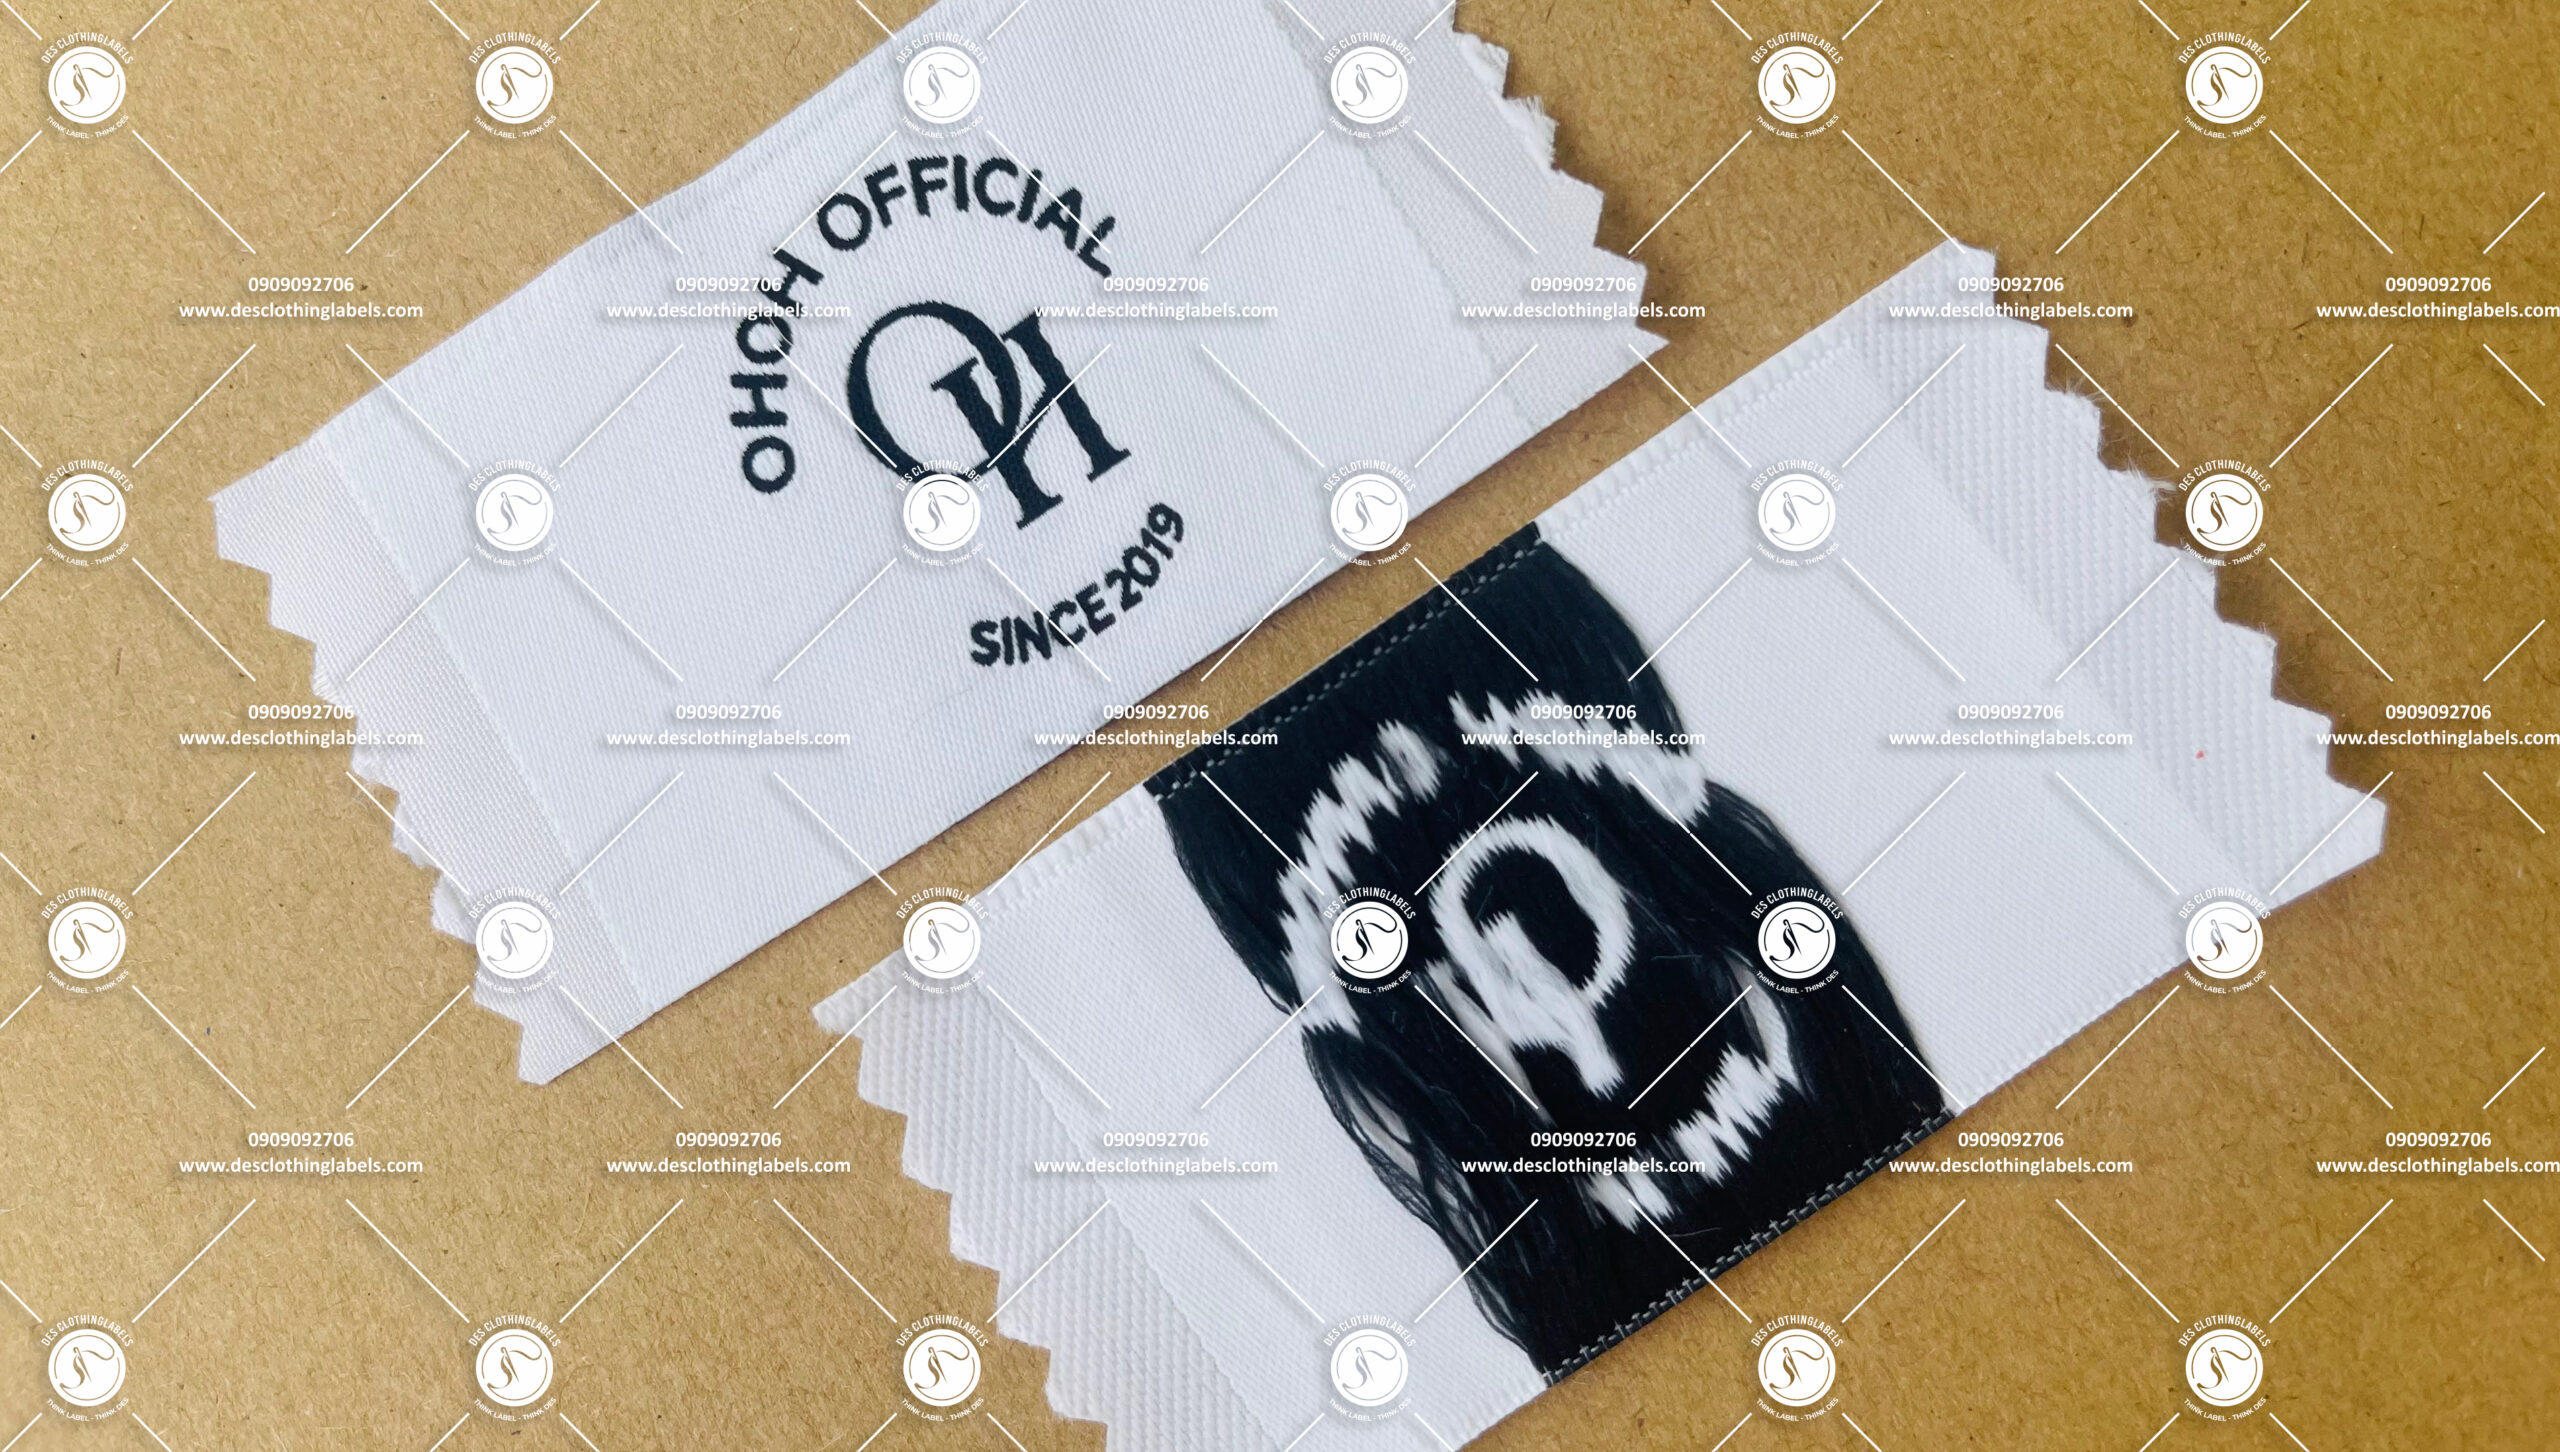 NHÃN DỆT 2 DA BRAND OHOH OFFICIAL - xưởng dệt mác trắng nền đen